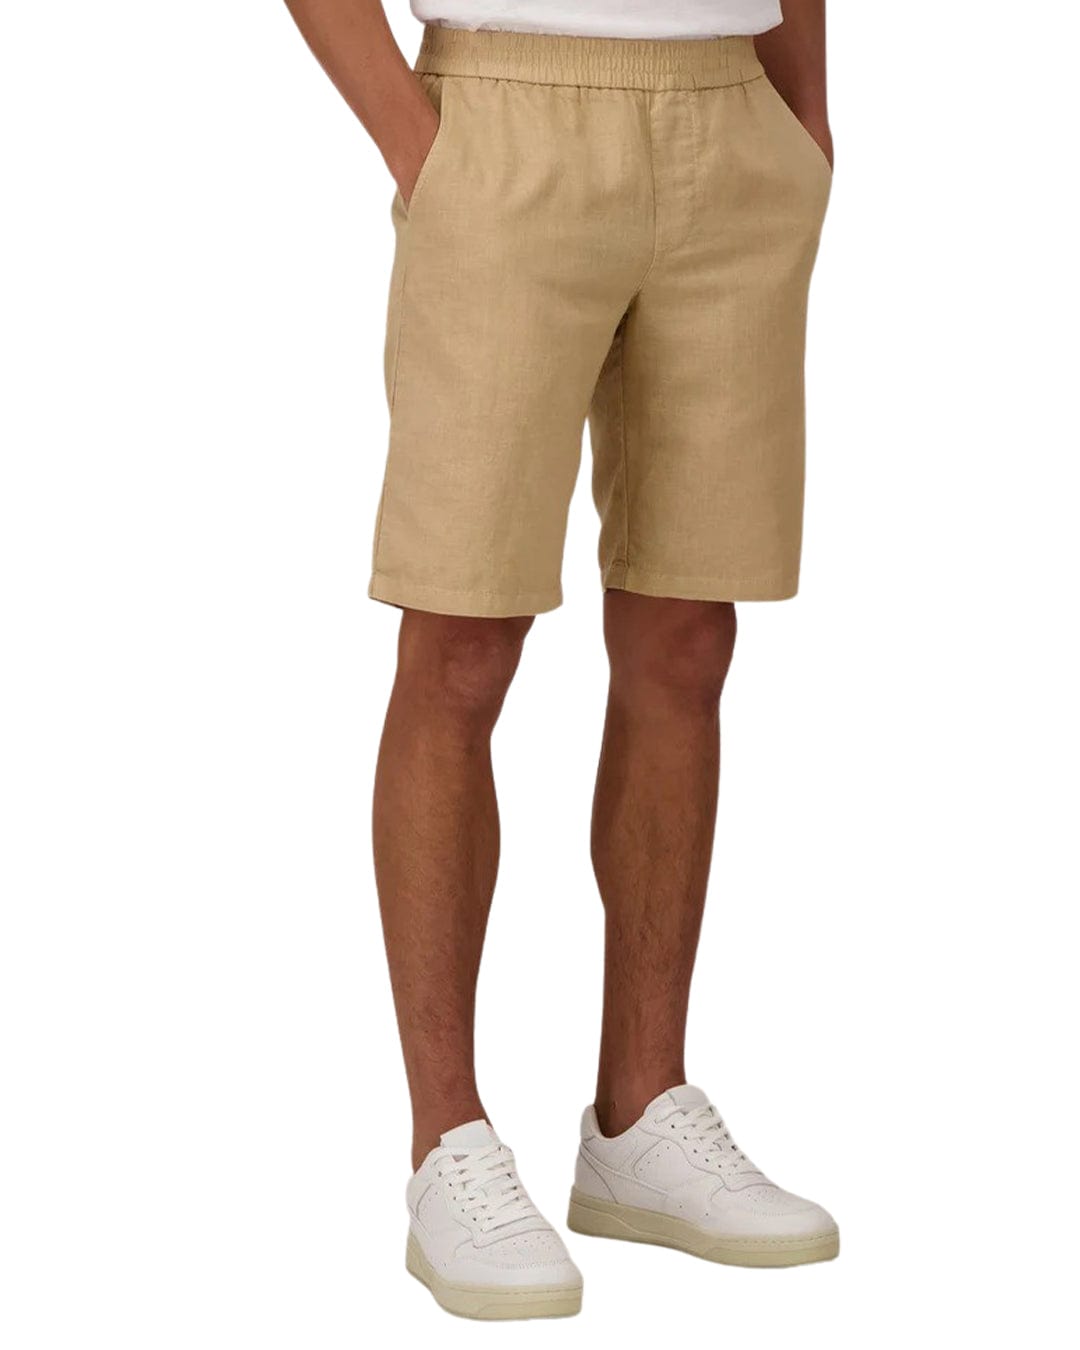 Fynch-Hatton Shorts Fynch-Hatton Brown Linen Cotton Shorts